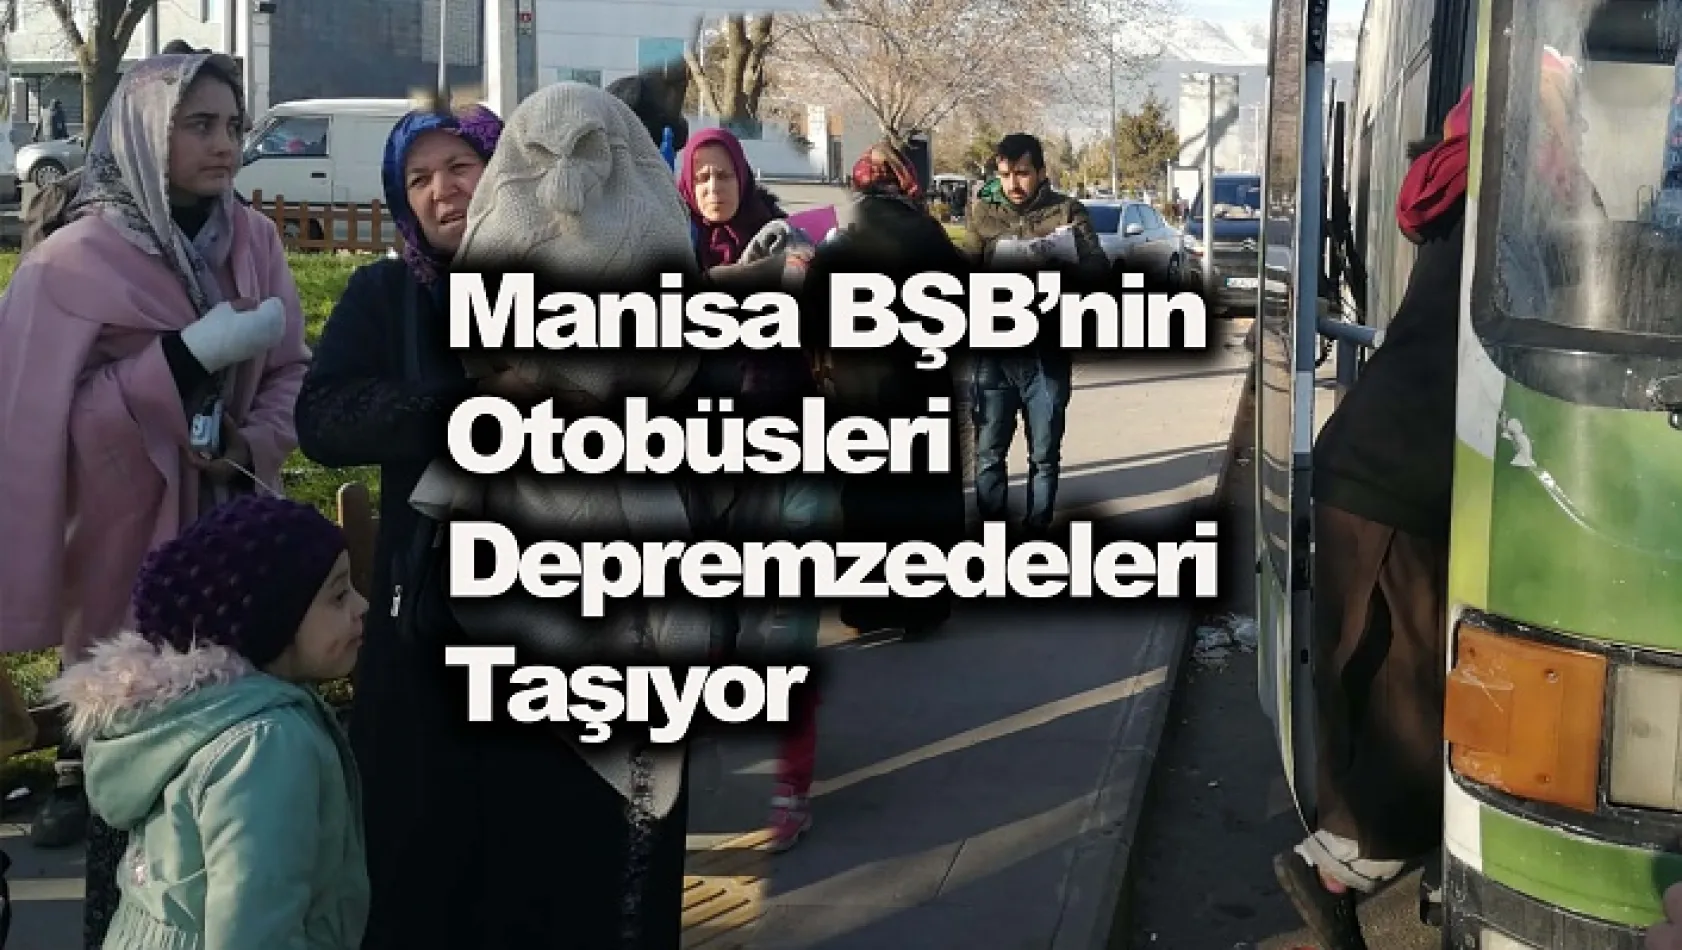 Manisa BŞB'nin Otobüsleri Depremzedeleri Taşıyor